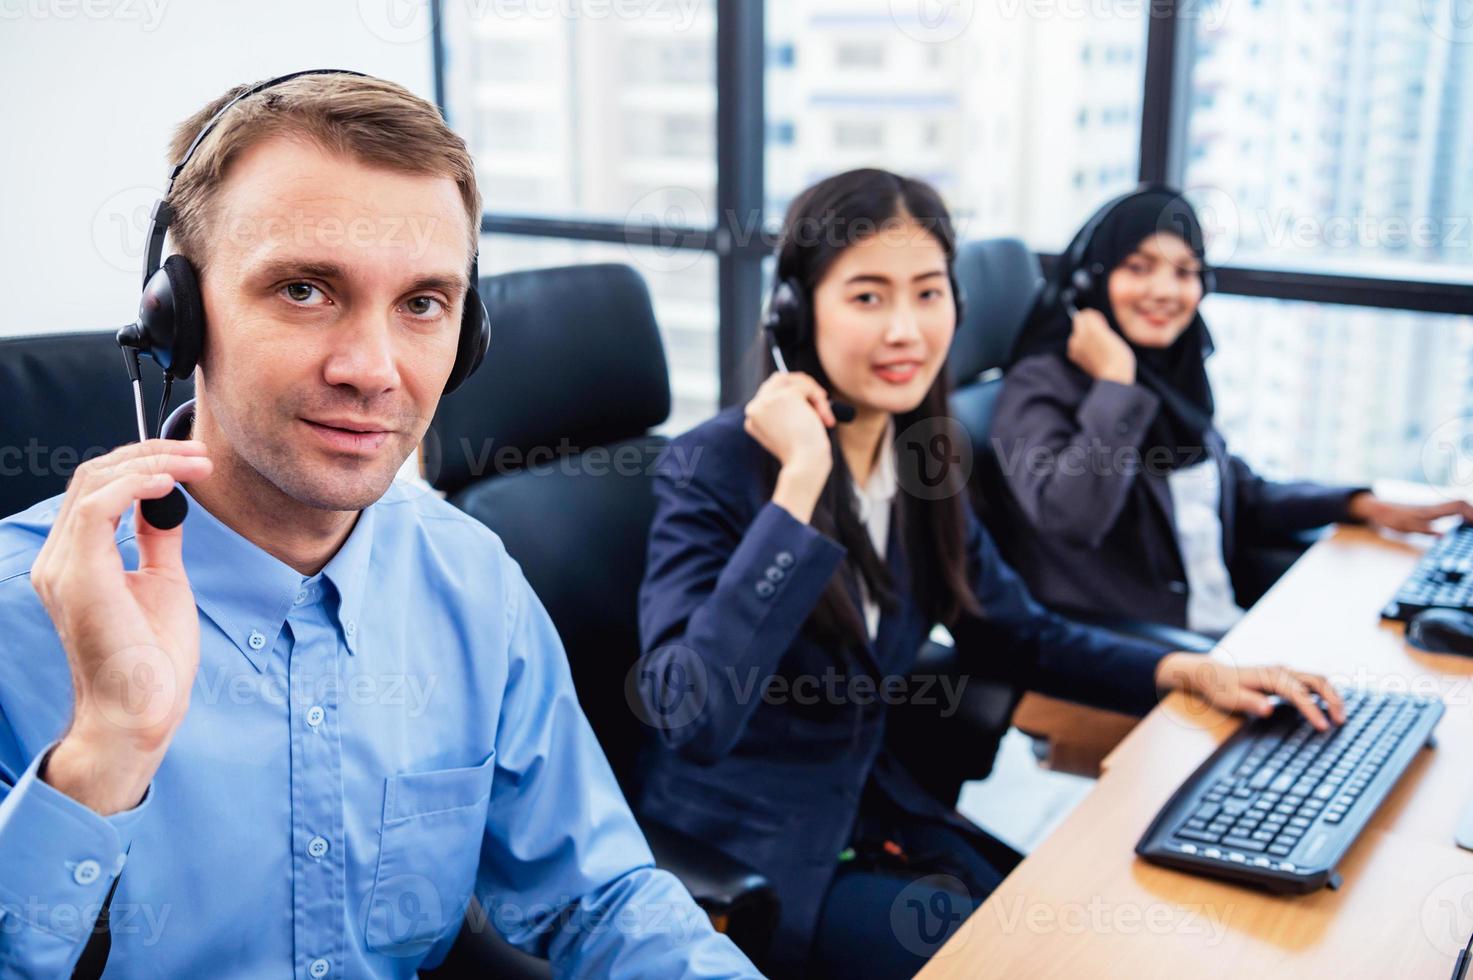 groep jonge beroep call center operator agent met headsets die op kantoor werken. zakelijke telemarketing service mensen die zich concentreren op het hebben van gesprekswerk en praten met klantvriendelijk foto